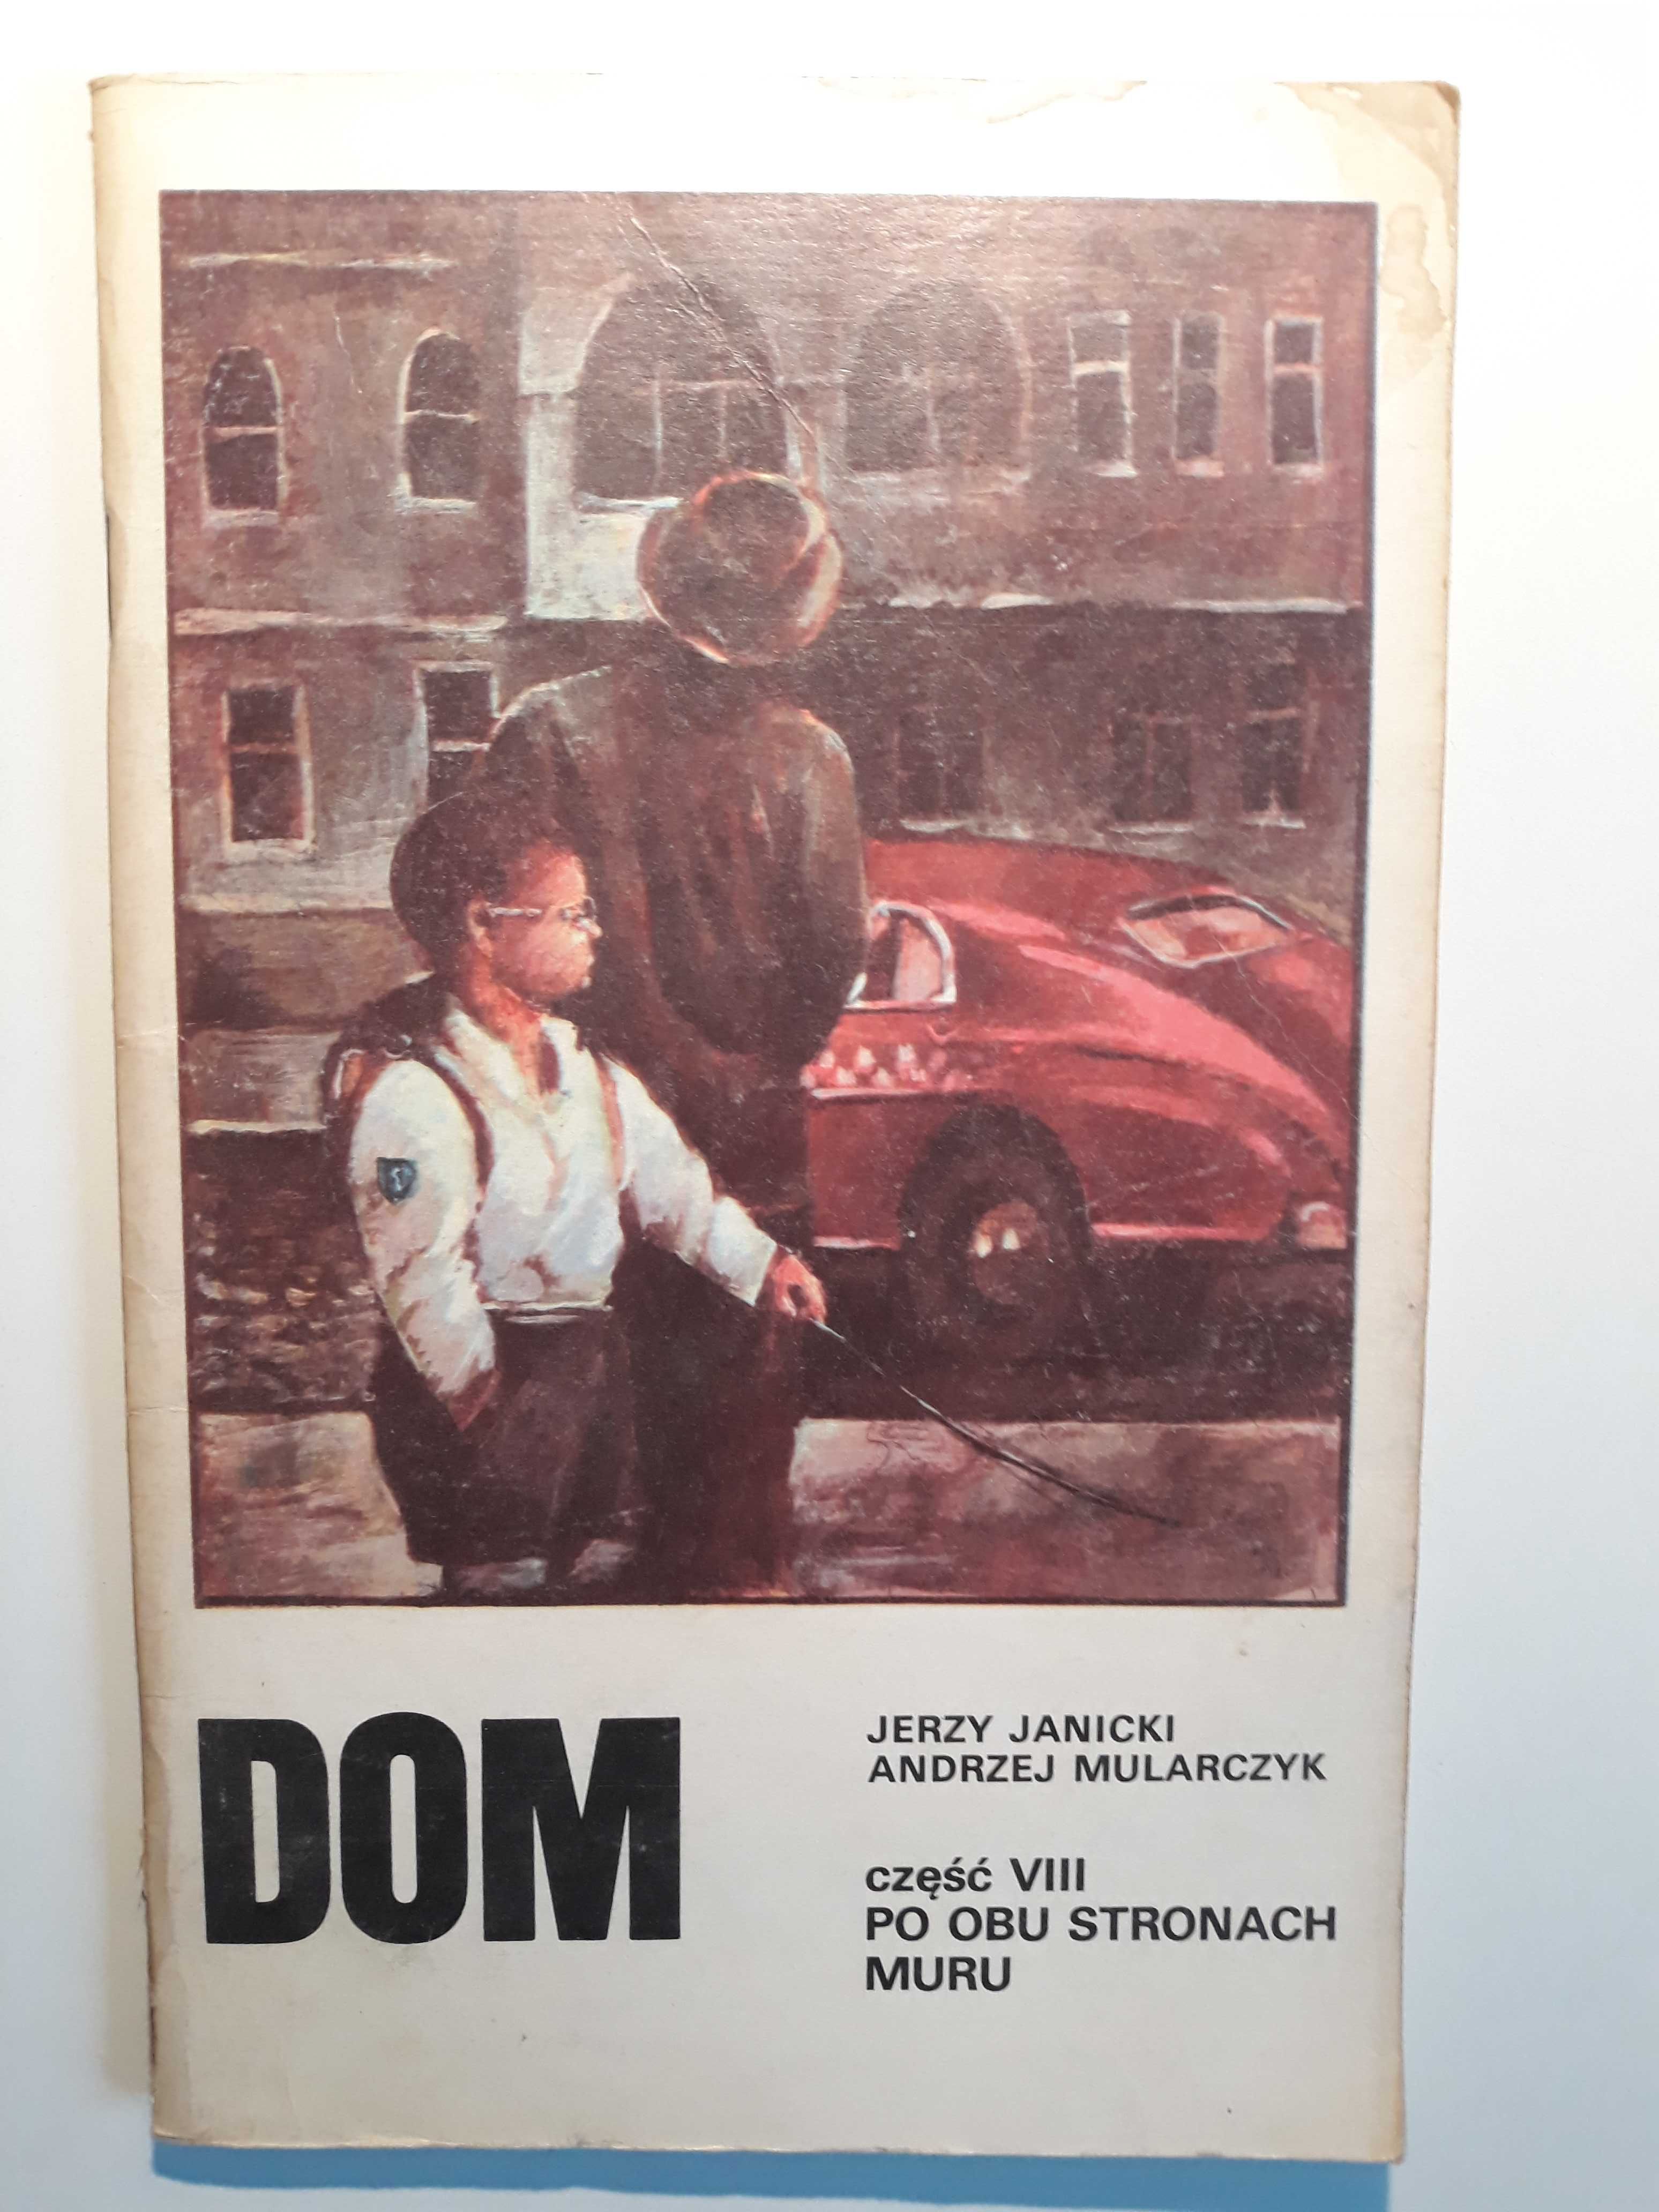 DOM opowieść filmowa z lat 80-tych 7 części